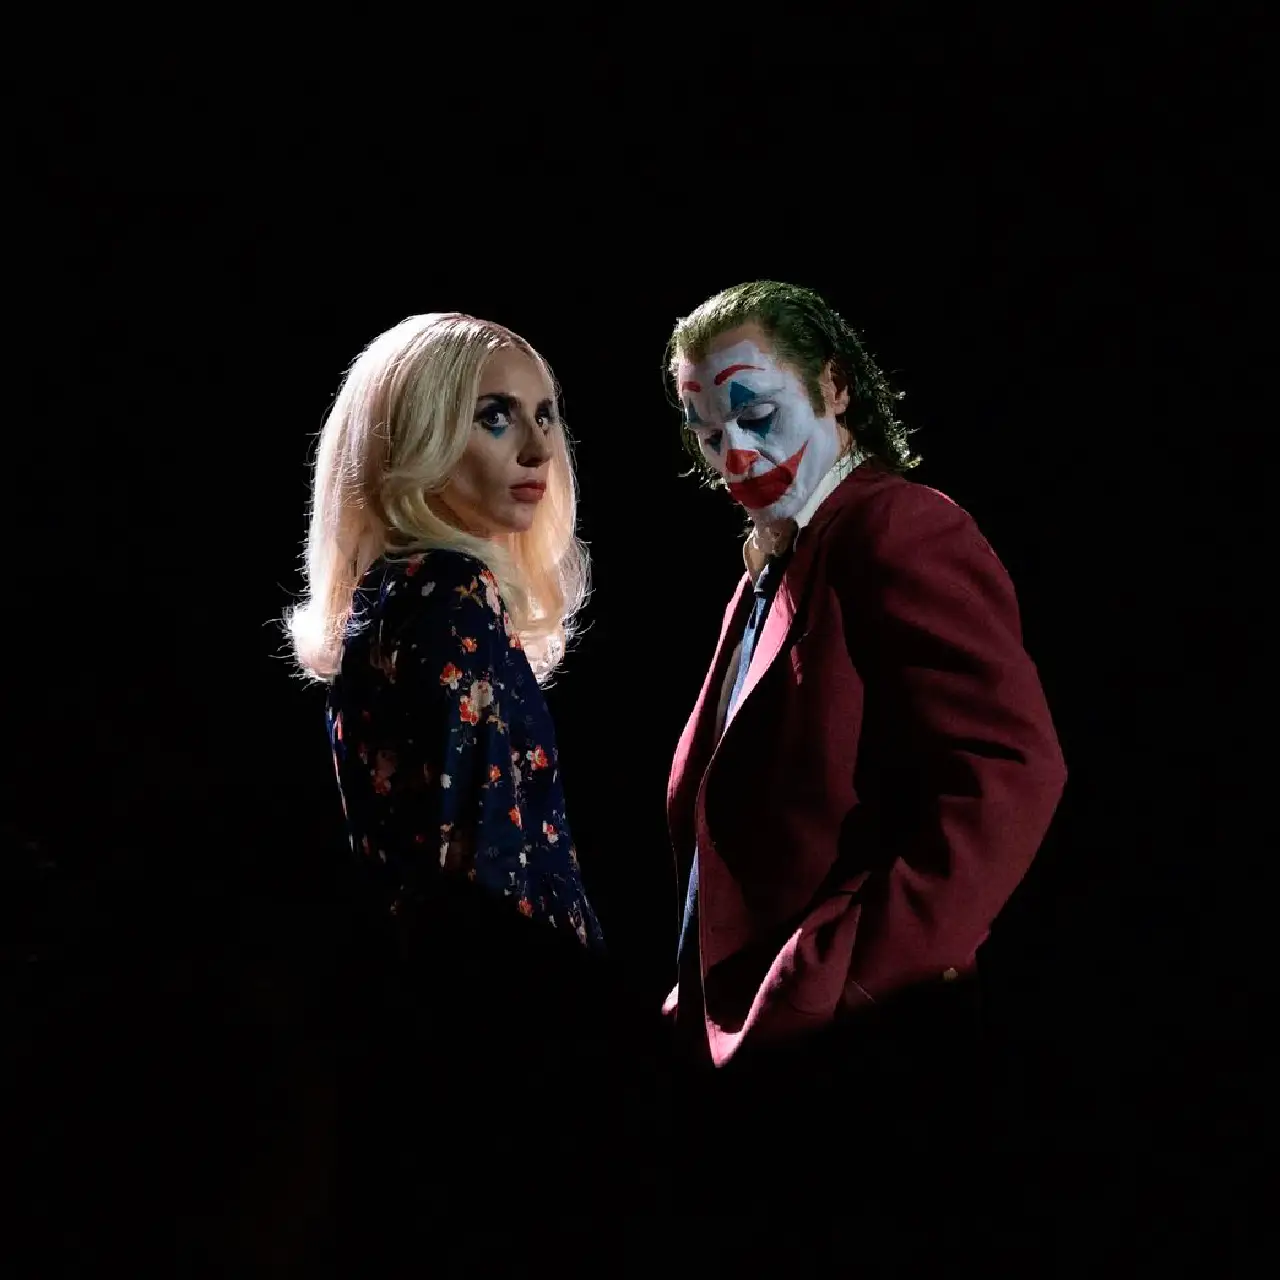 Joker 2: DC Desata la pasión con nuevas imágenes de Joaquin Phoenix y Lady Gaga